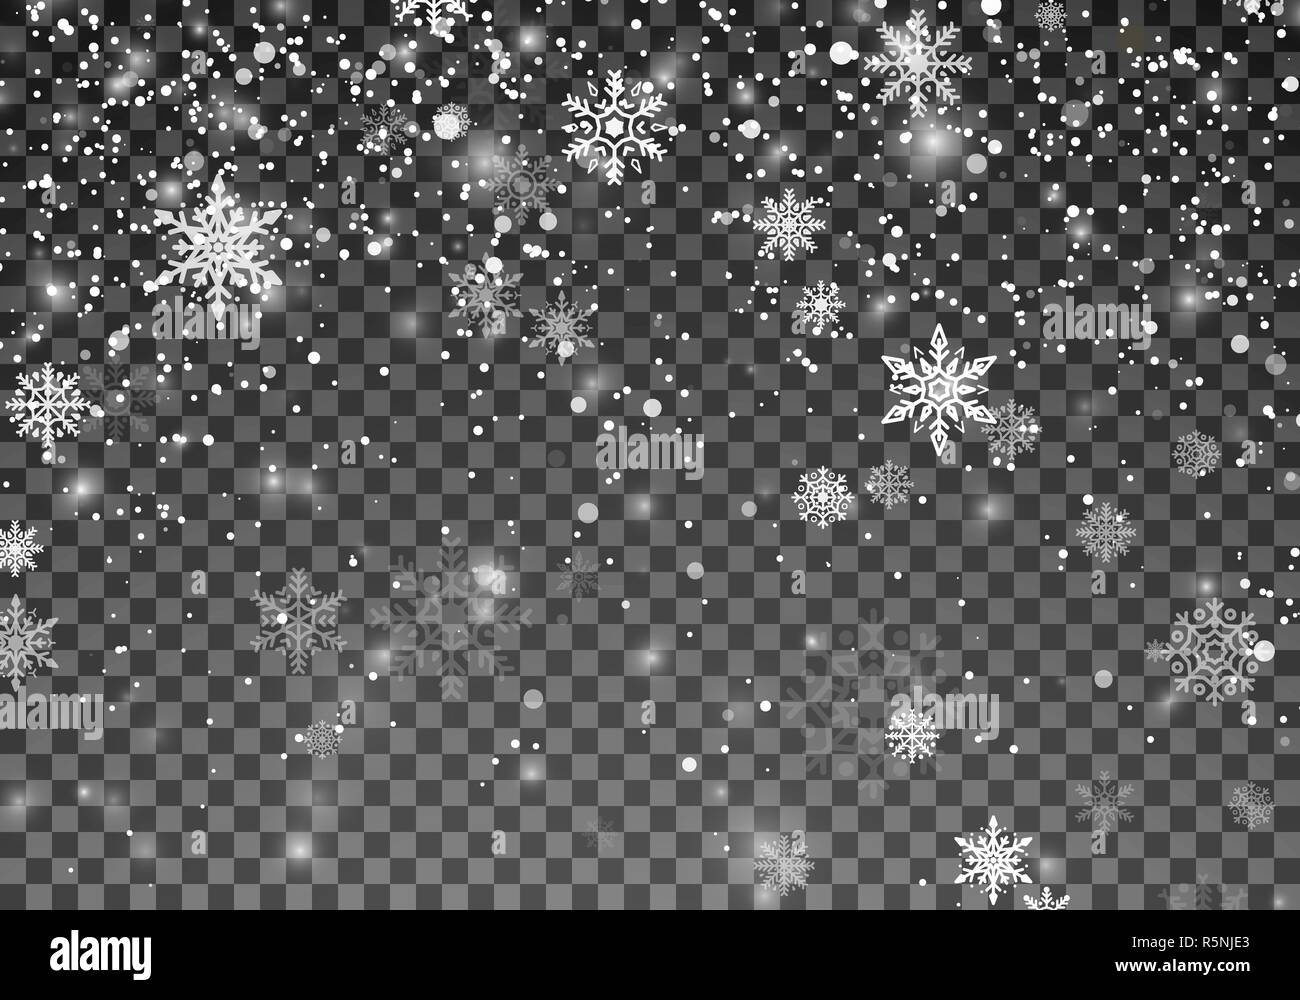 Schneefall Vorlage. Weihnachten Schnee. Fallende Schneeflocken auf transparenten Hintergrund. Weihnachten Urlaub Hintergrund. Vector Illustration Stock Vektor